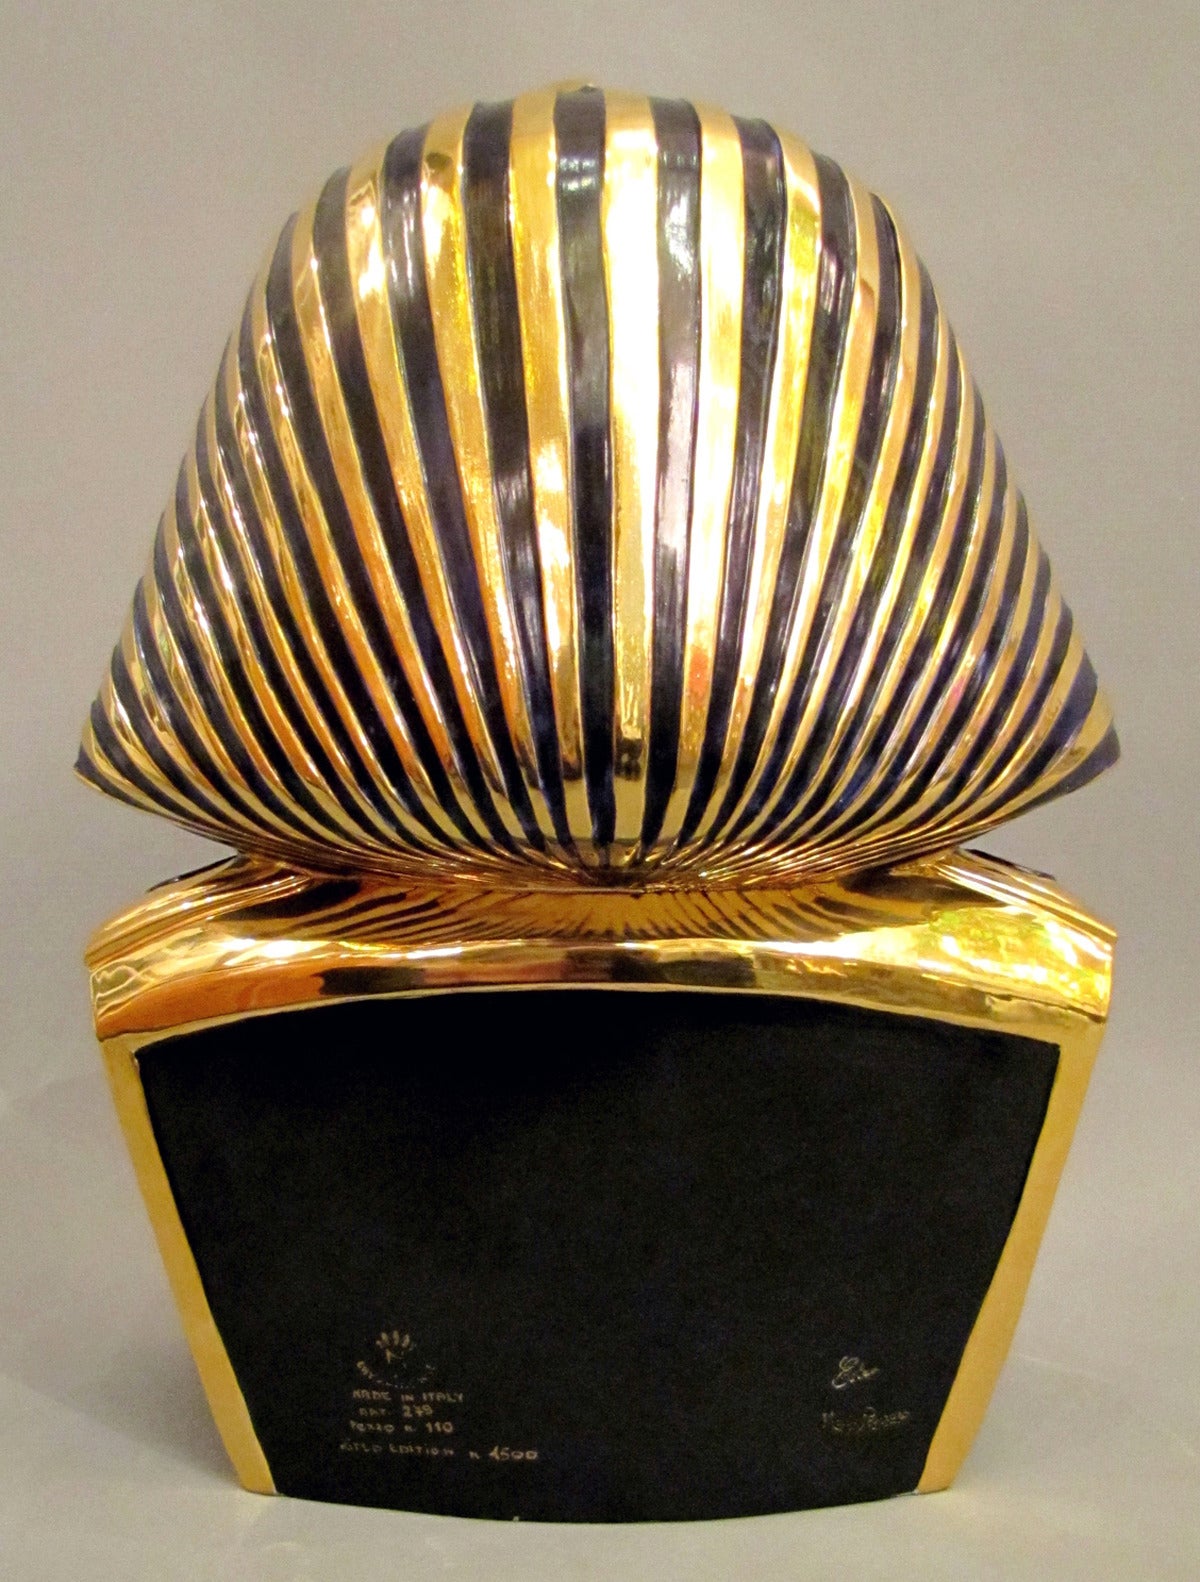 Italian 1970s Pharaoh Bust, Capodimonte Enameled Porcelain, Gilded in 24-Carat Gold